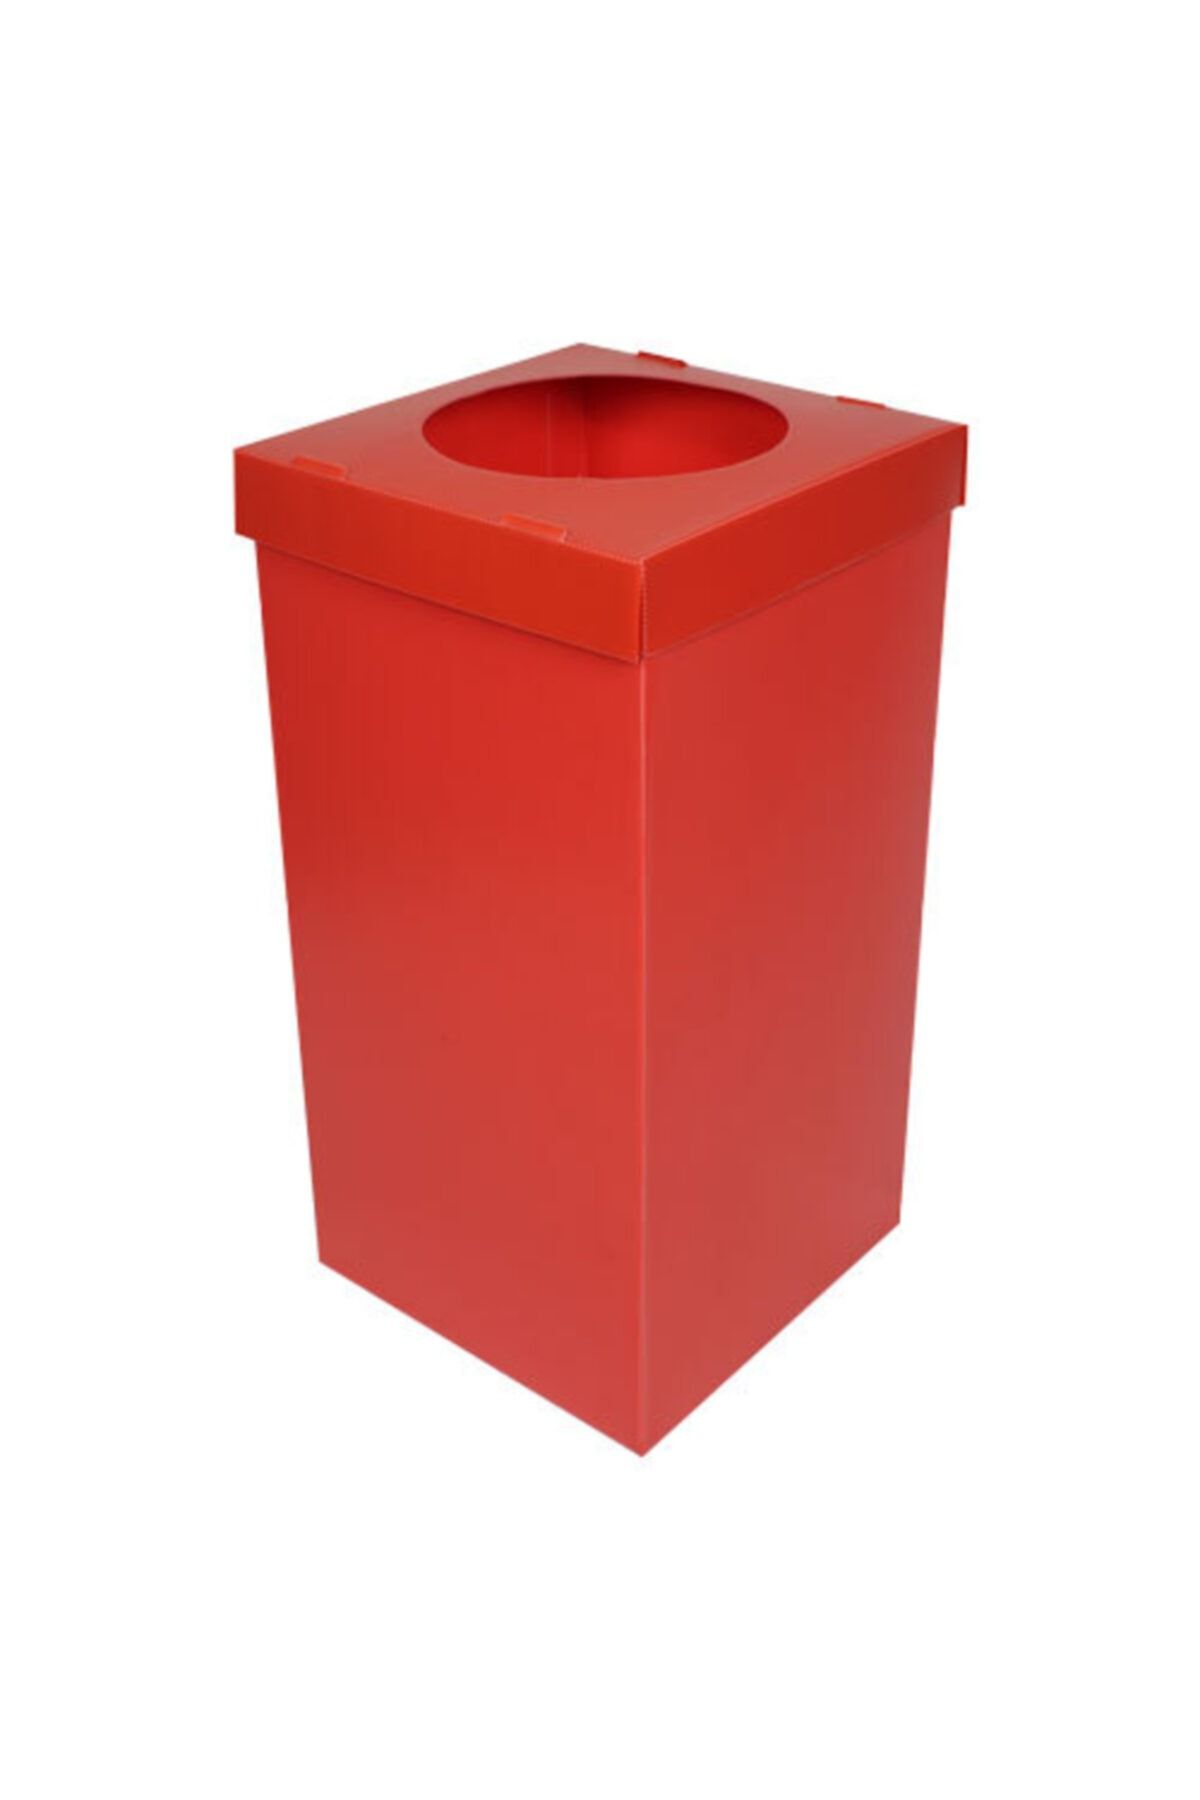 ÖZTAMER Plastik Atık Ve Geri Dönüşüm Kutusu Kırmızı